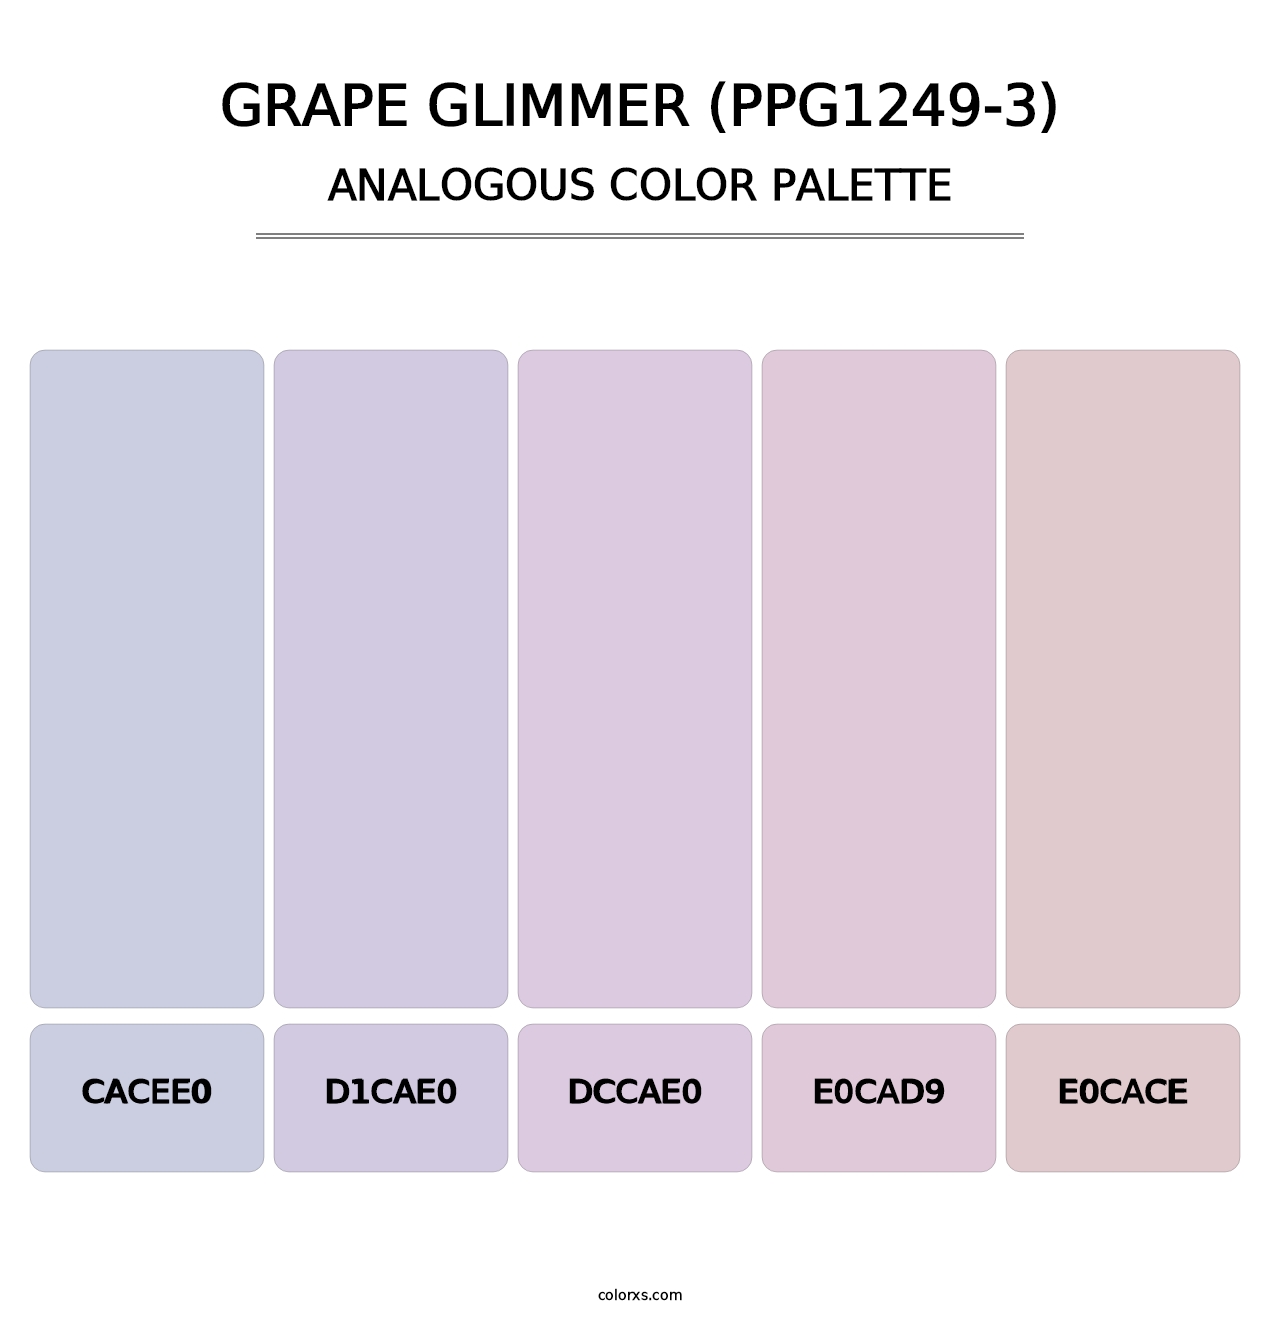 Grape Glimmer (PPG1249-3) - Analogous Color Palette